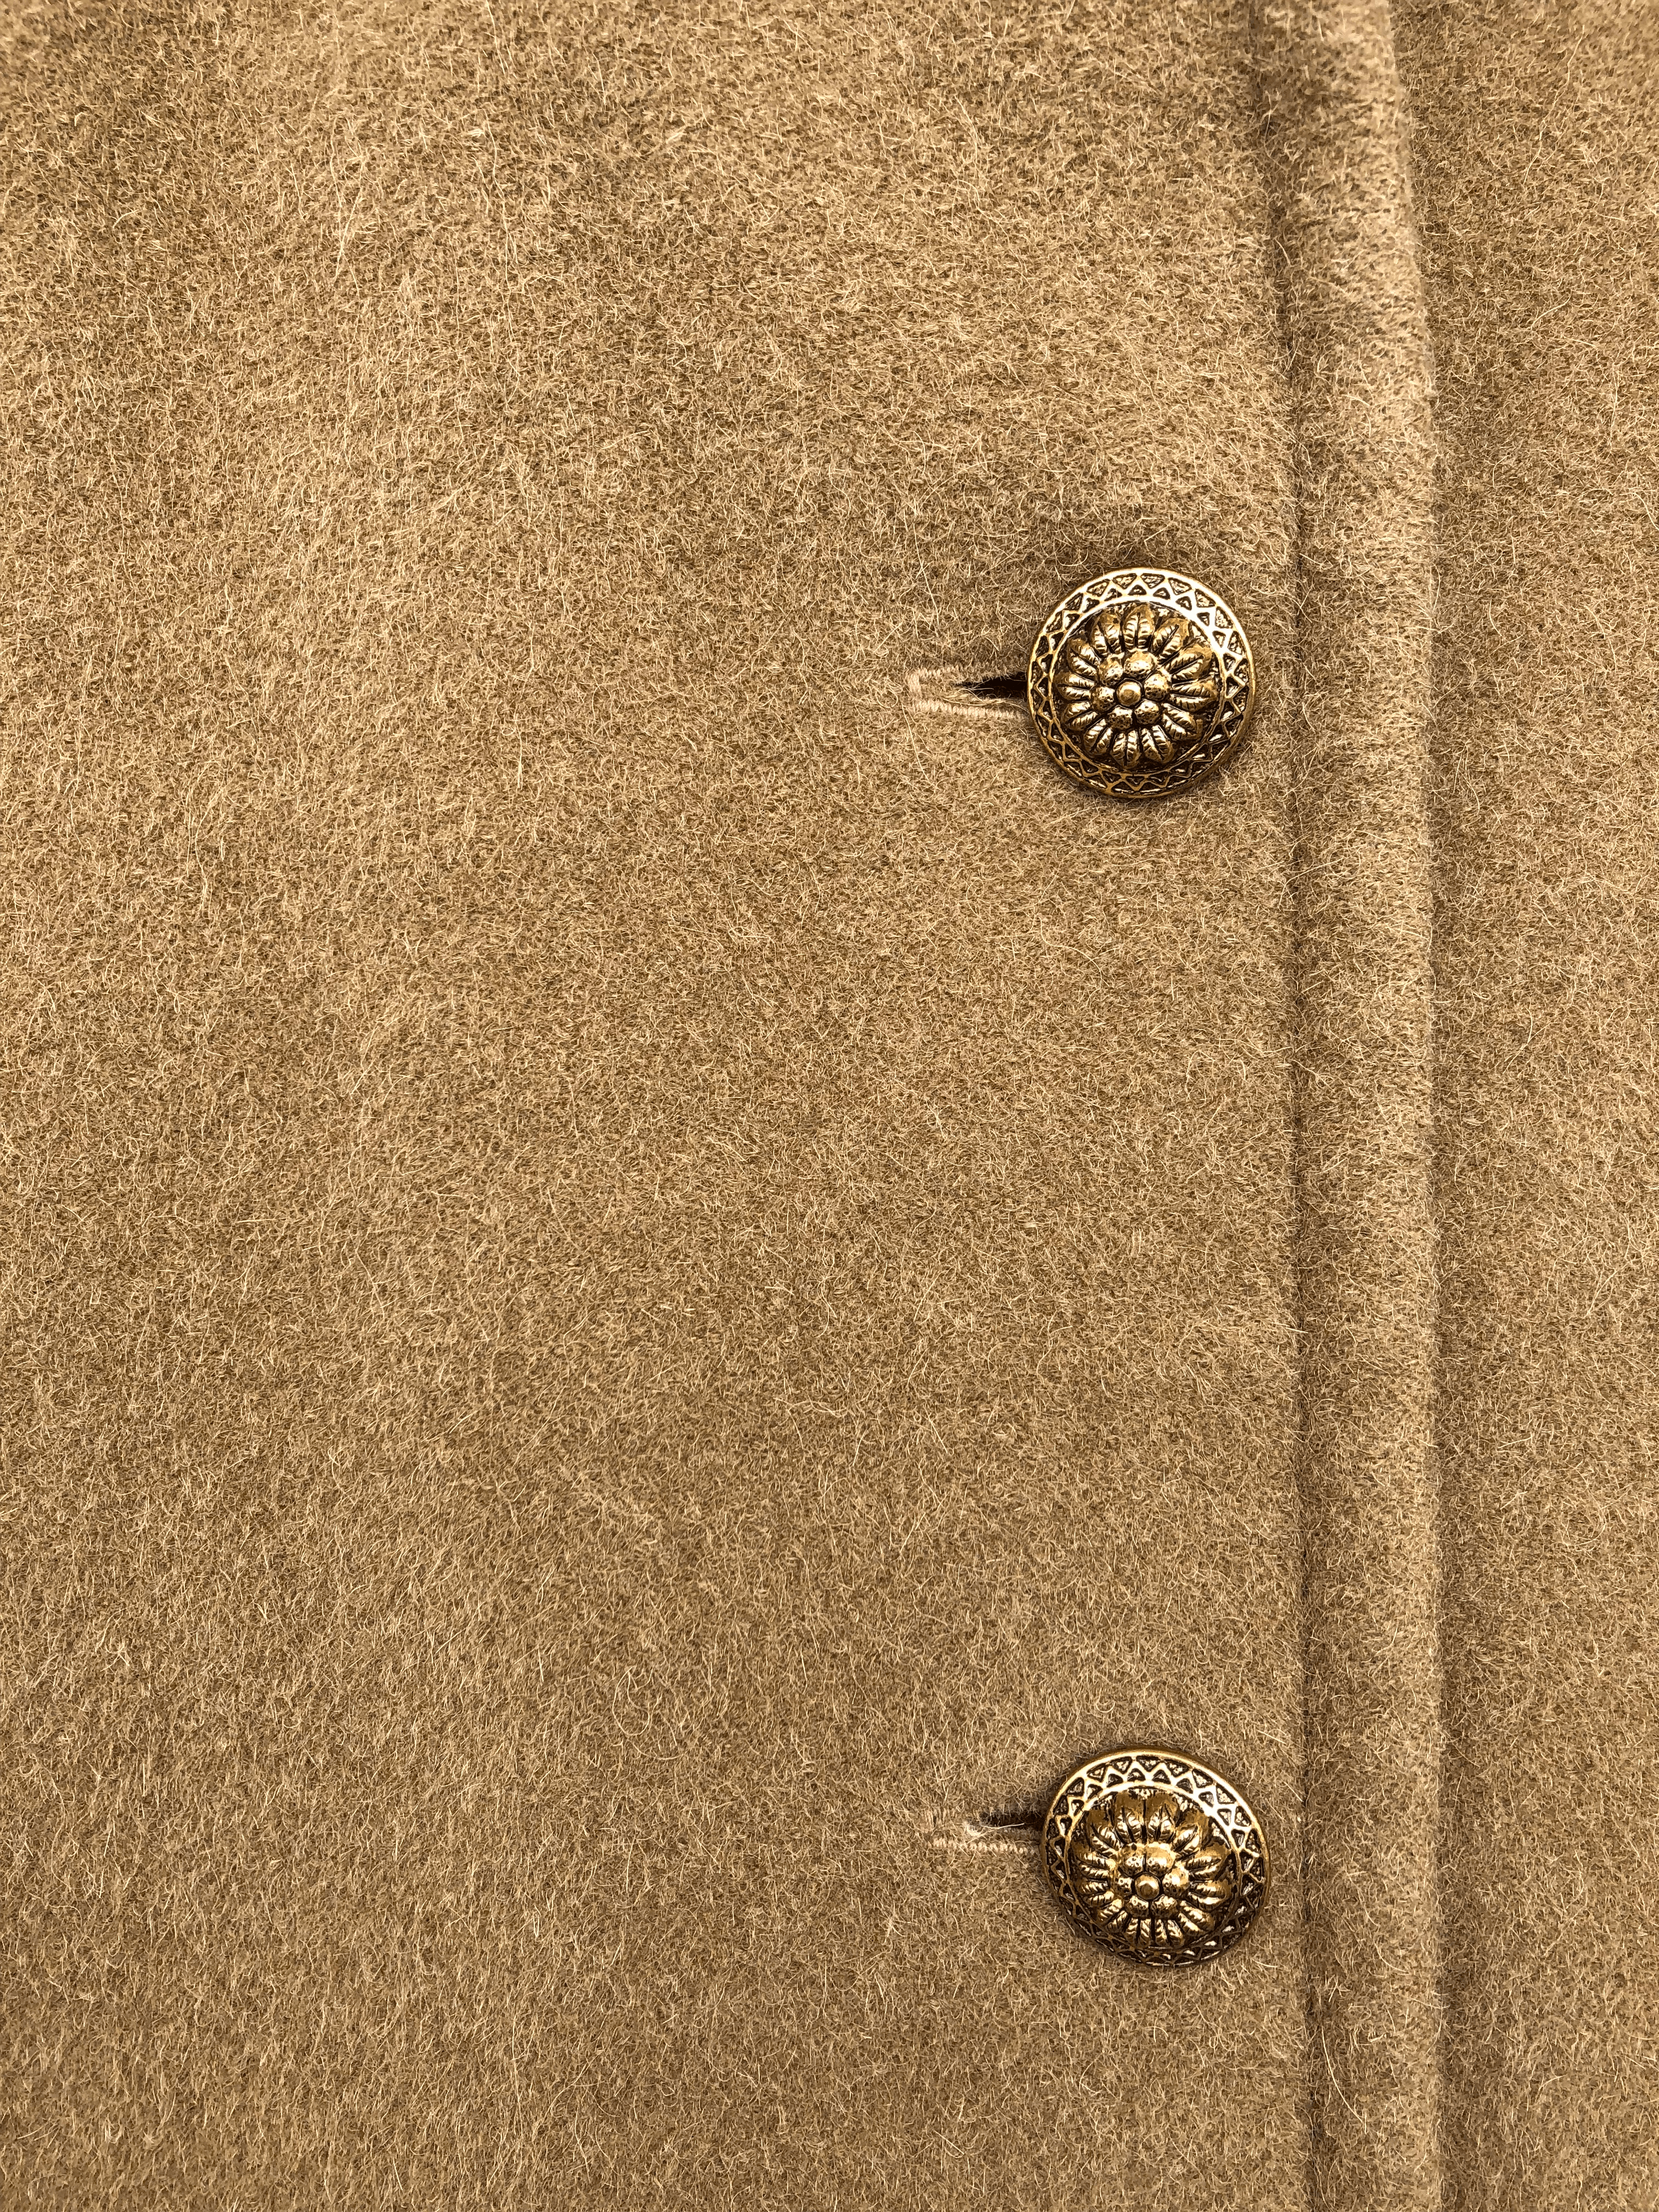 Saco vintage de paño camel, corte recto, botones dorados y bolsillos. Busto 104cm Largo 94cm